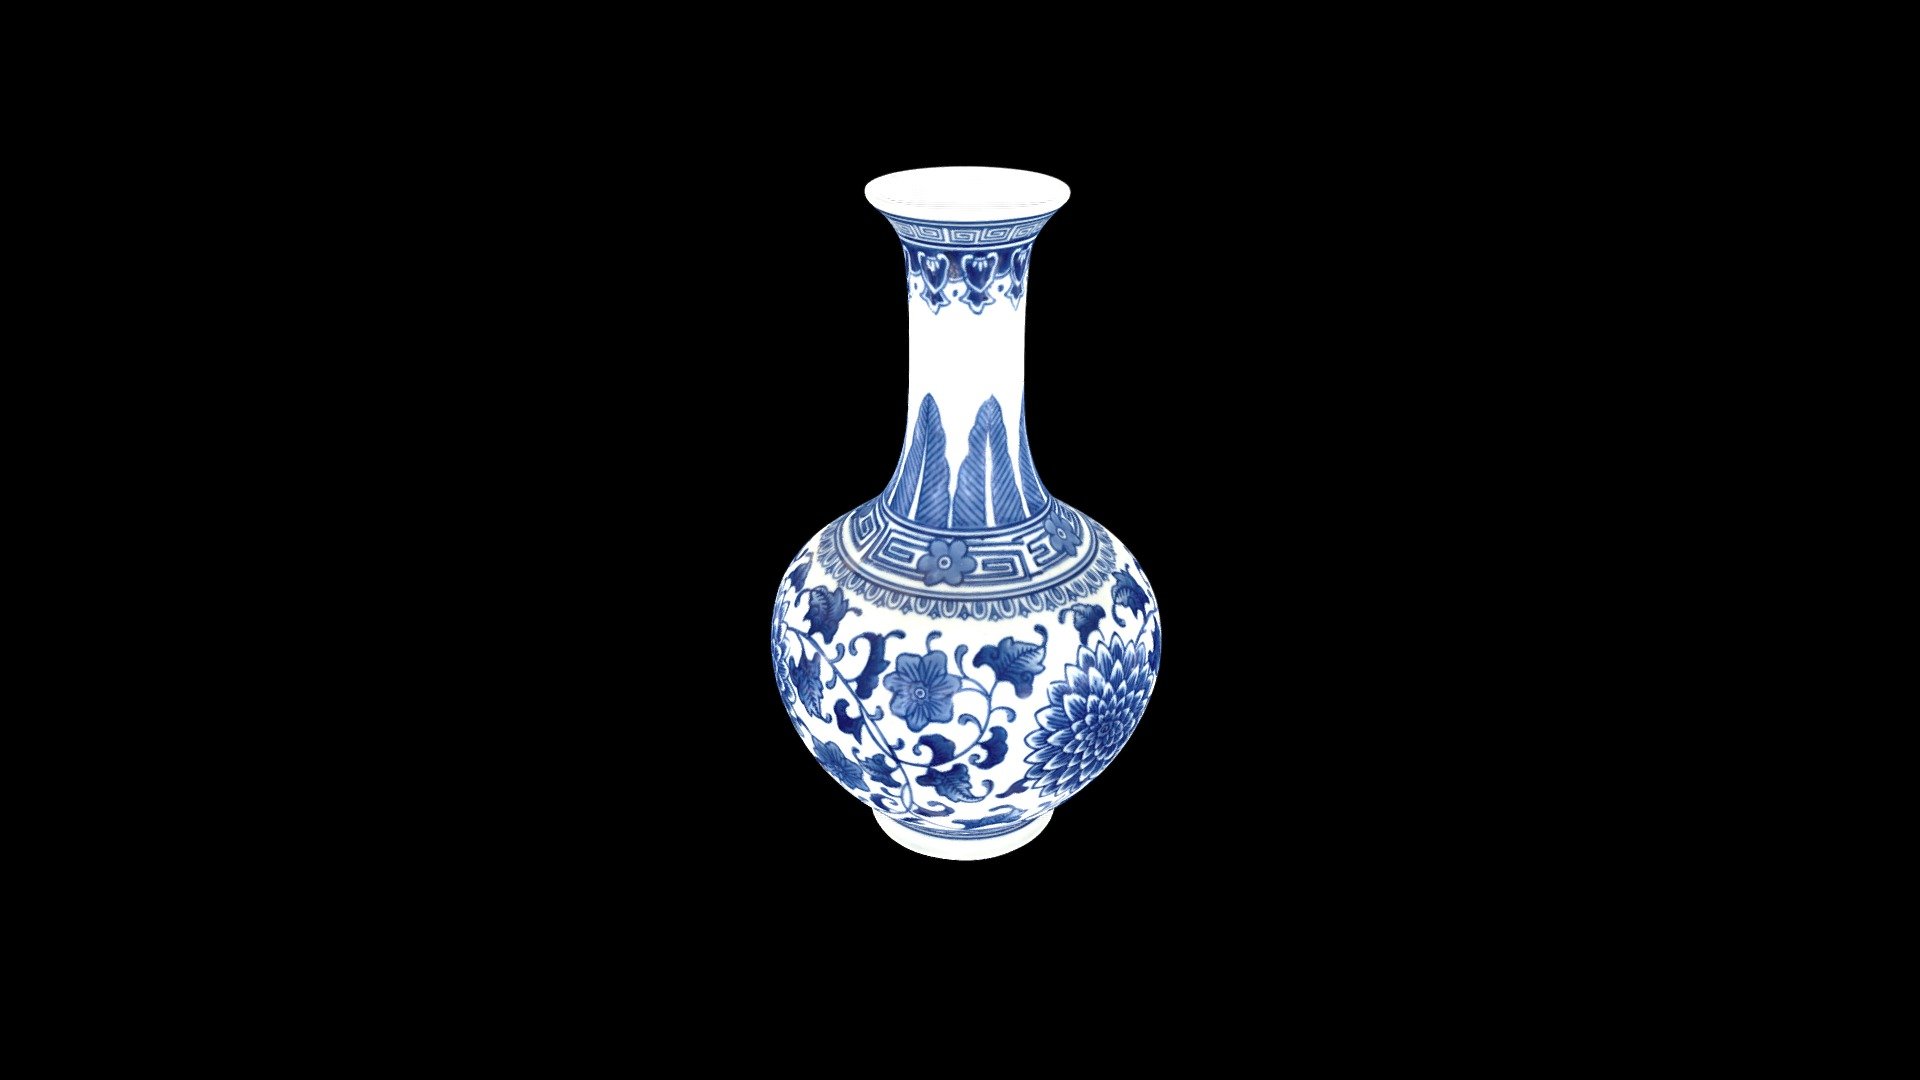 Vase Scan - duplicated version